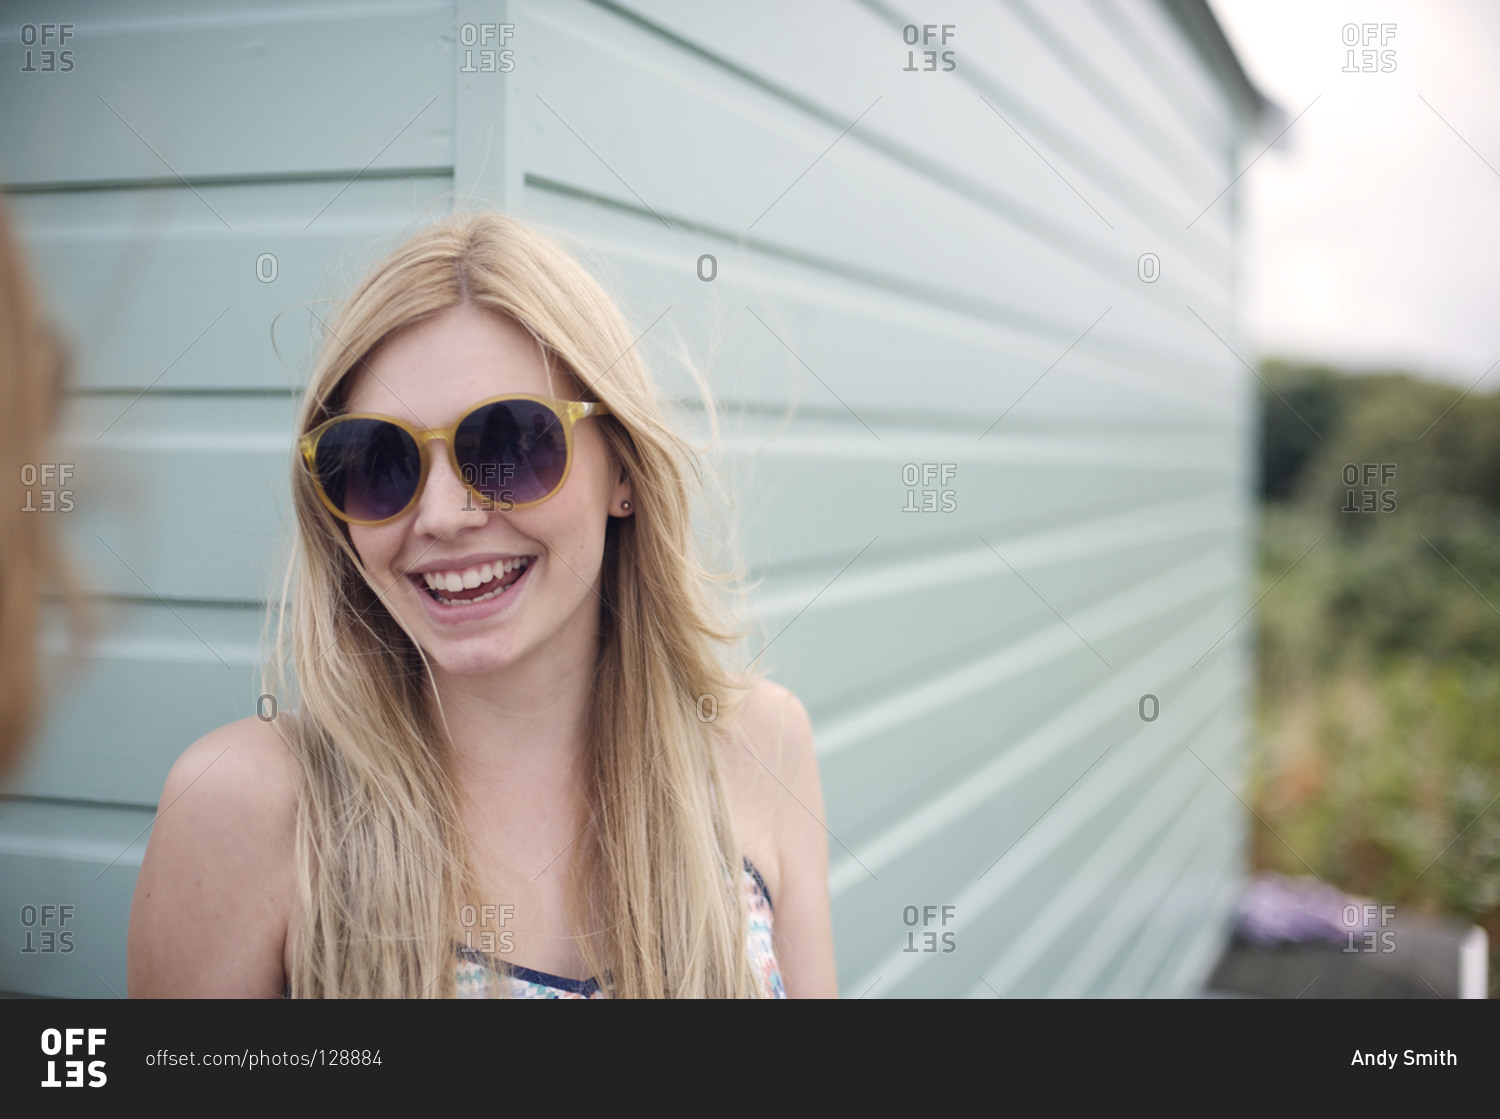 short blonde hair sunglasses